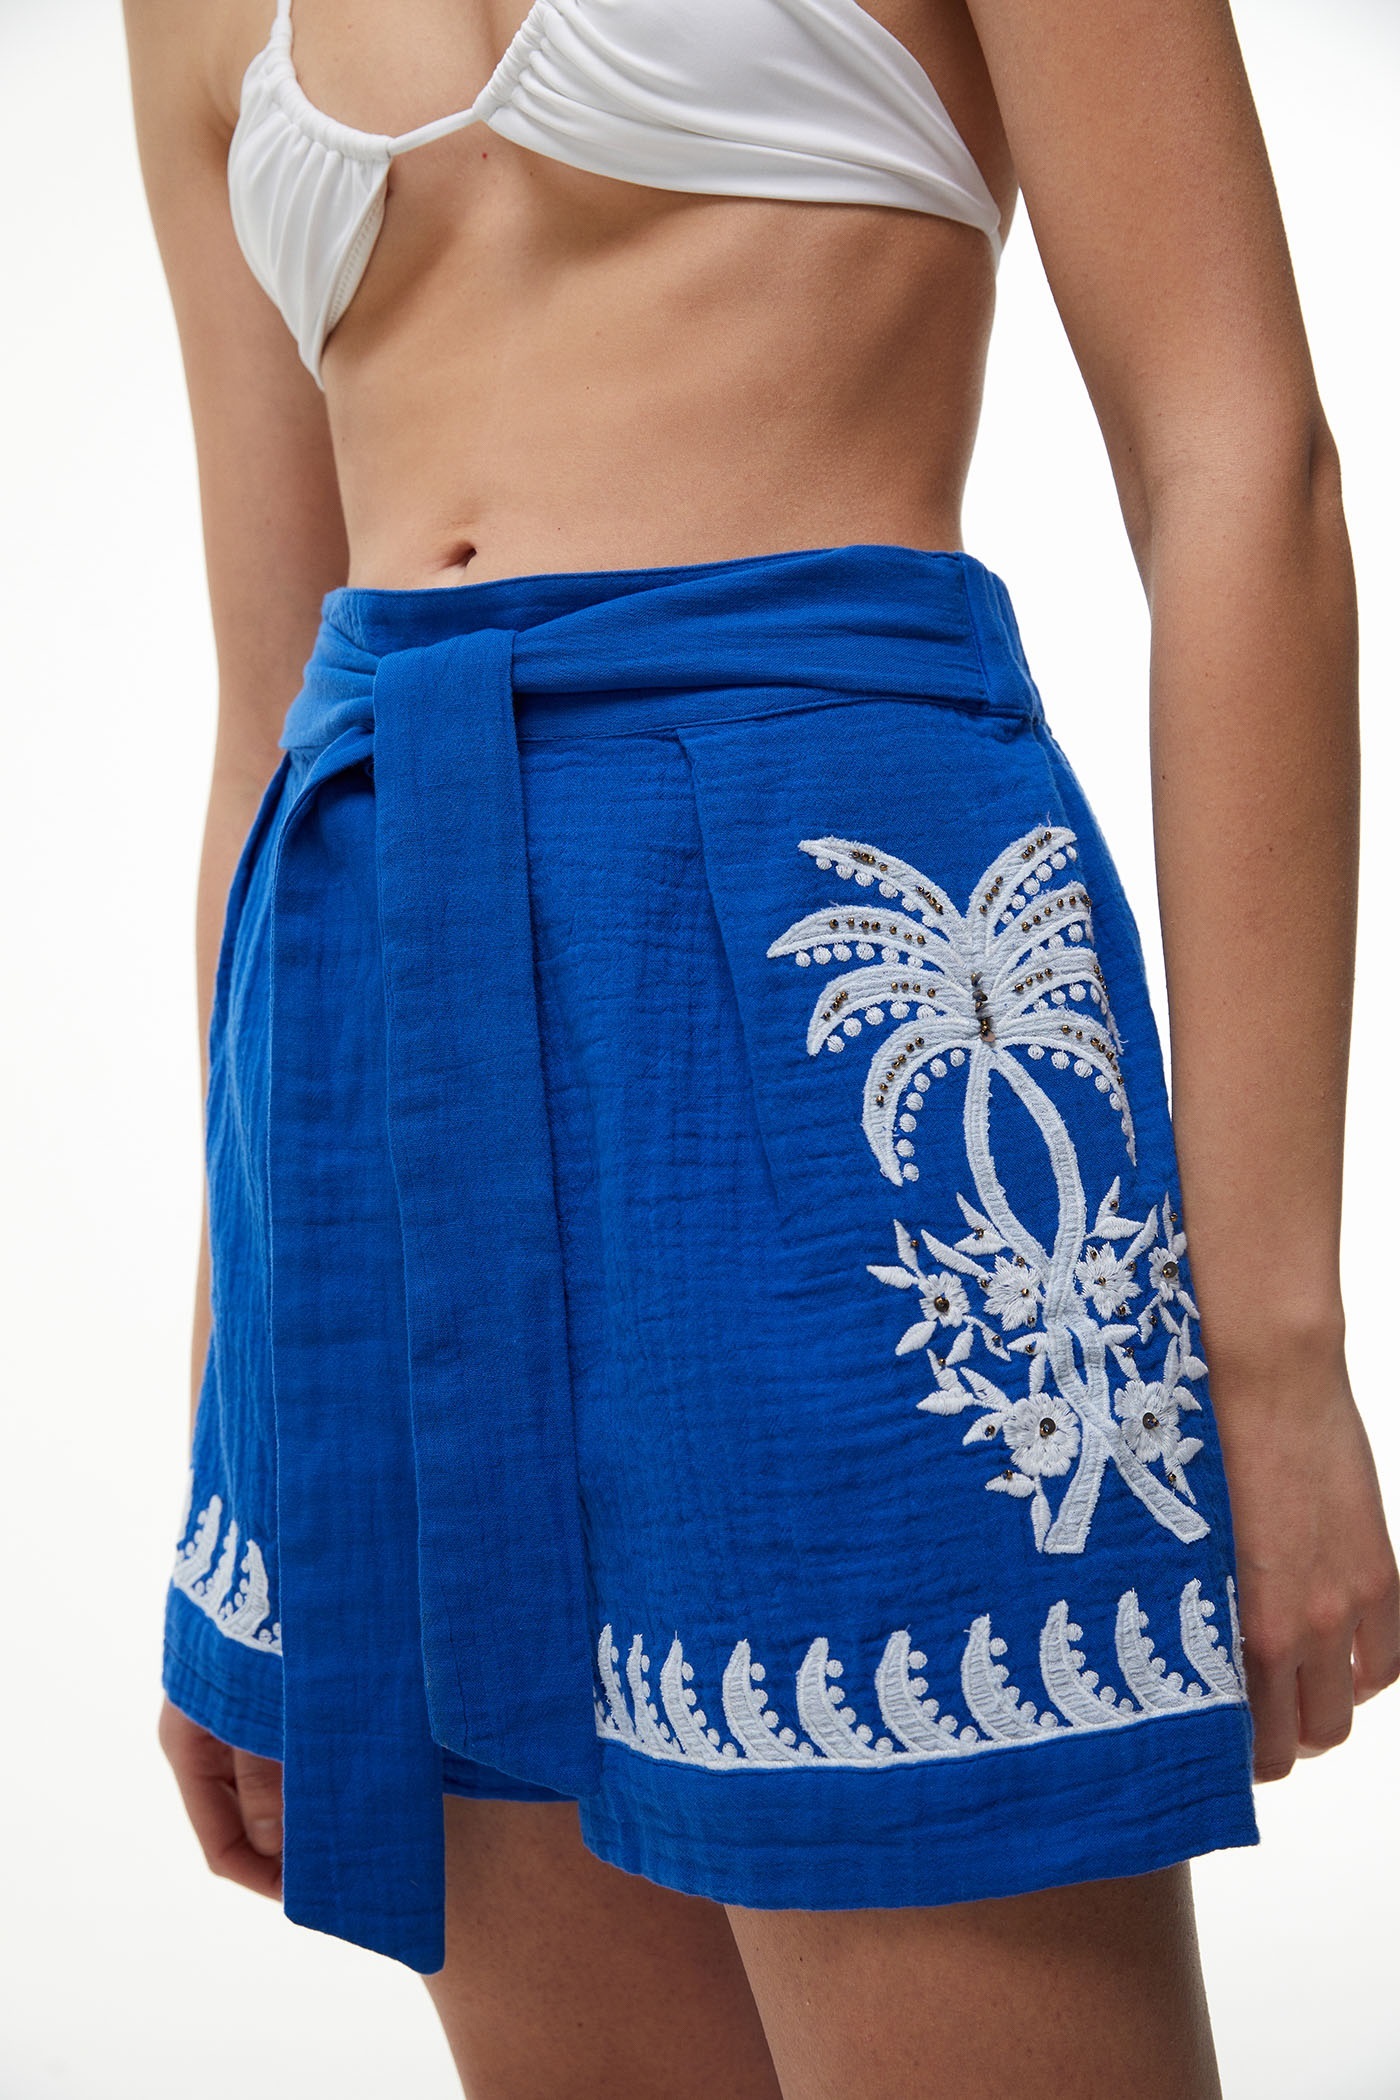 ALT: Los 13 shorts de Sfera a H&M para las que ya tienen ganas de verano